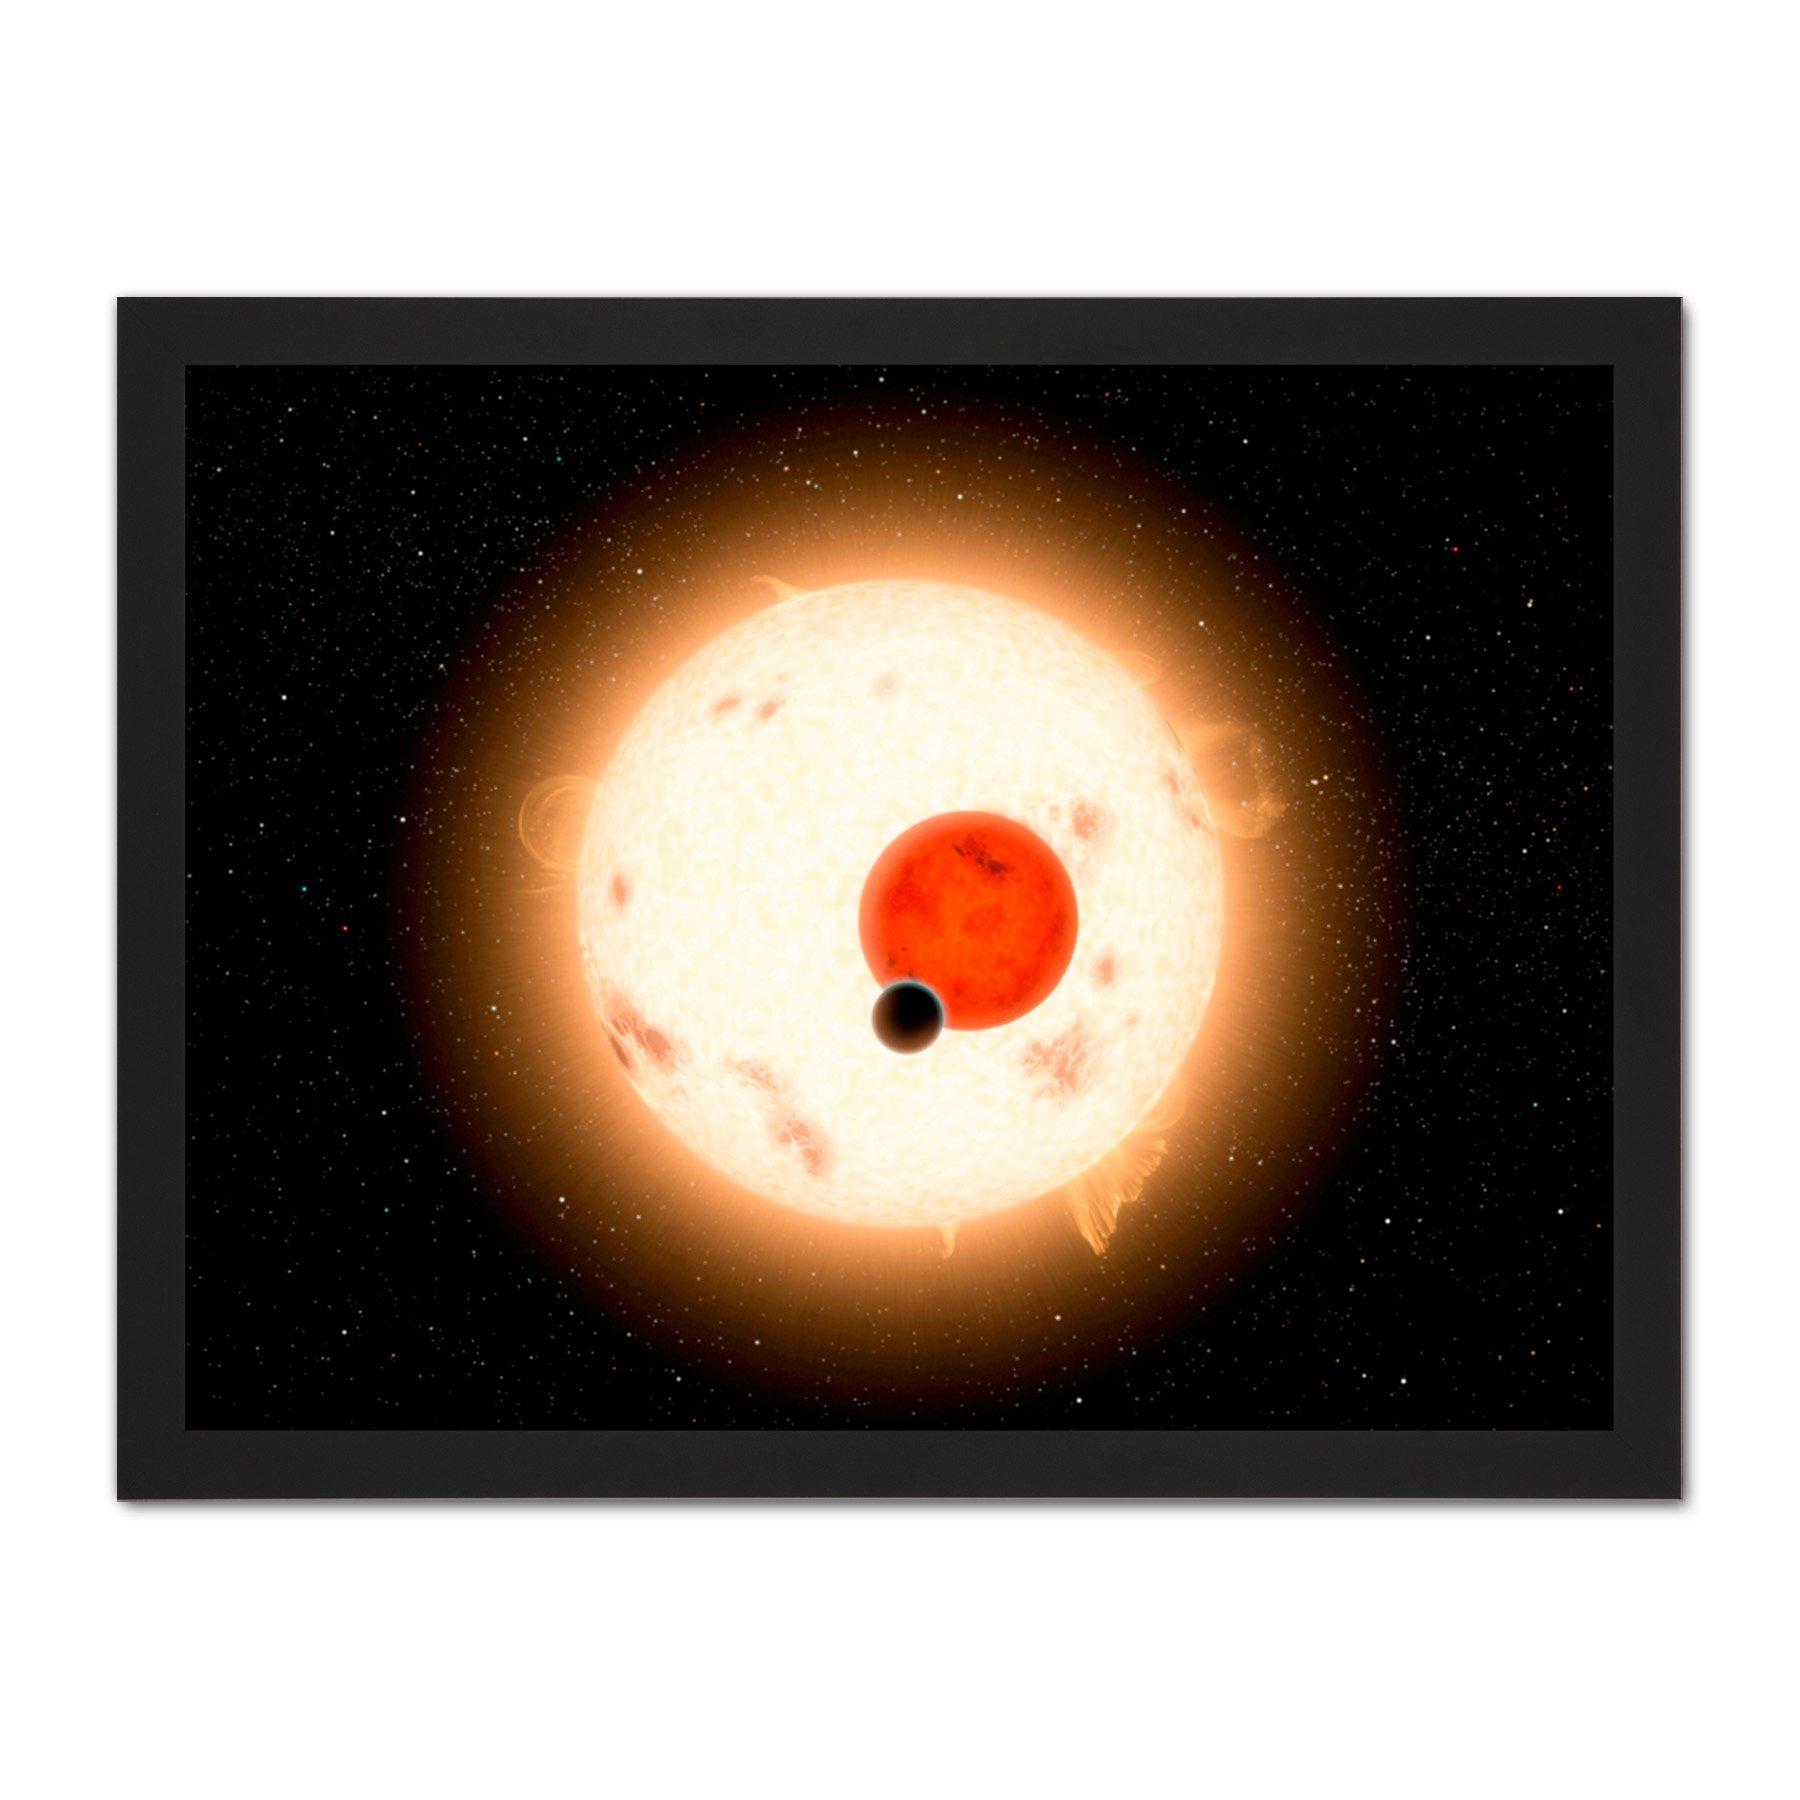 Space NASA Planet Kepler-16 Red Dwarf Star Illustration Large Framed Wall Decor Art Print